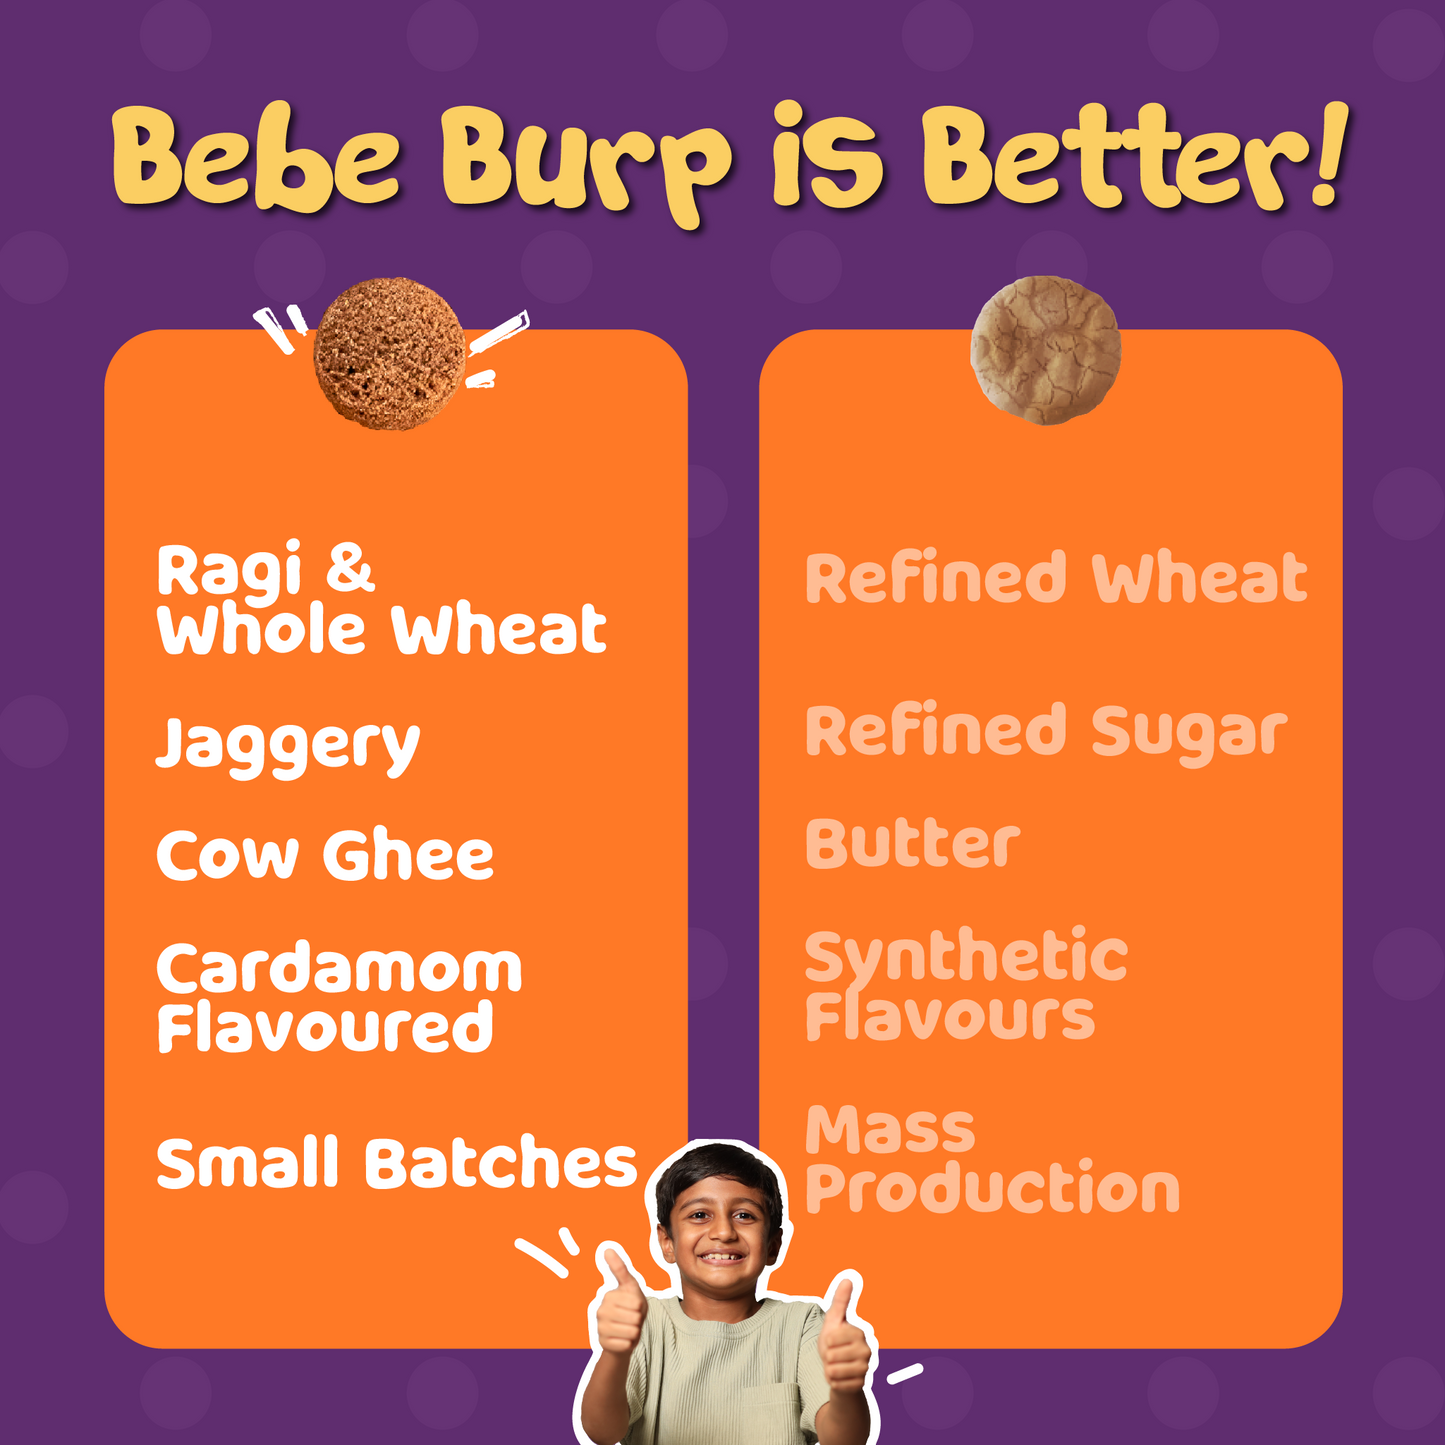 Bebe Burp Baby Food Raagi Cookies Combo Pack of 5 - 150 gms each